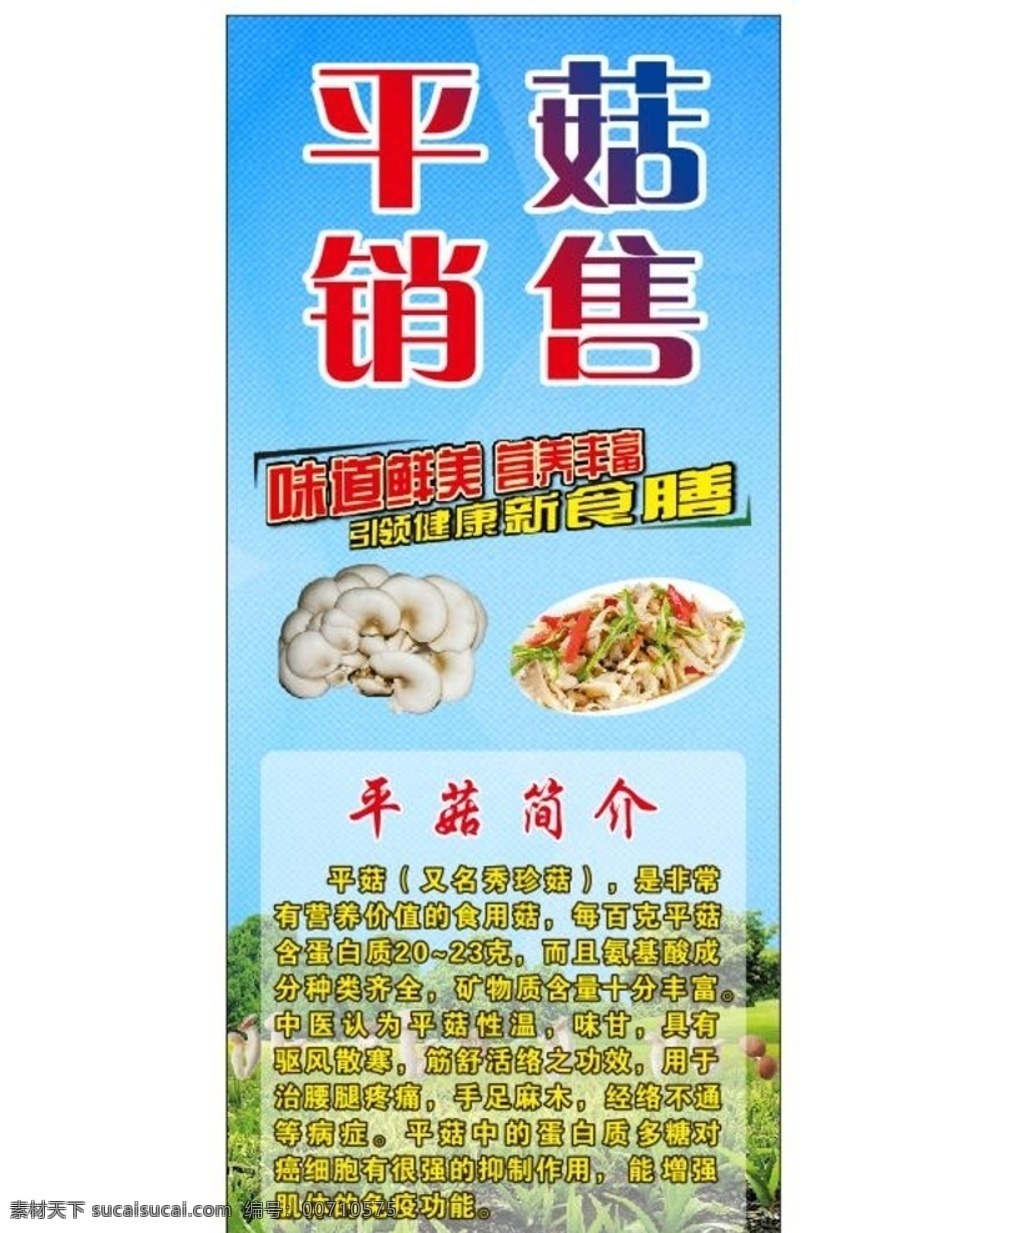 平菇销售 平菇图片 x展架 蓝色背景 菇类 高档背景 海报